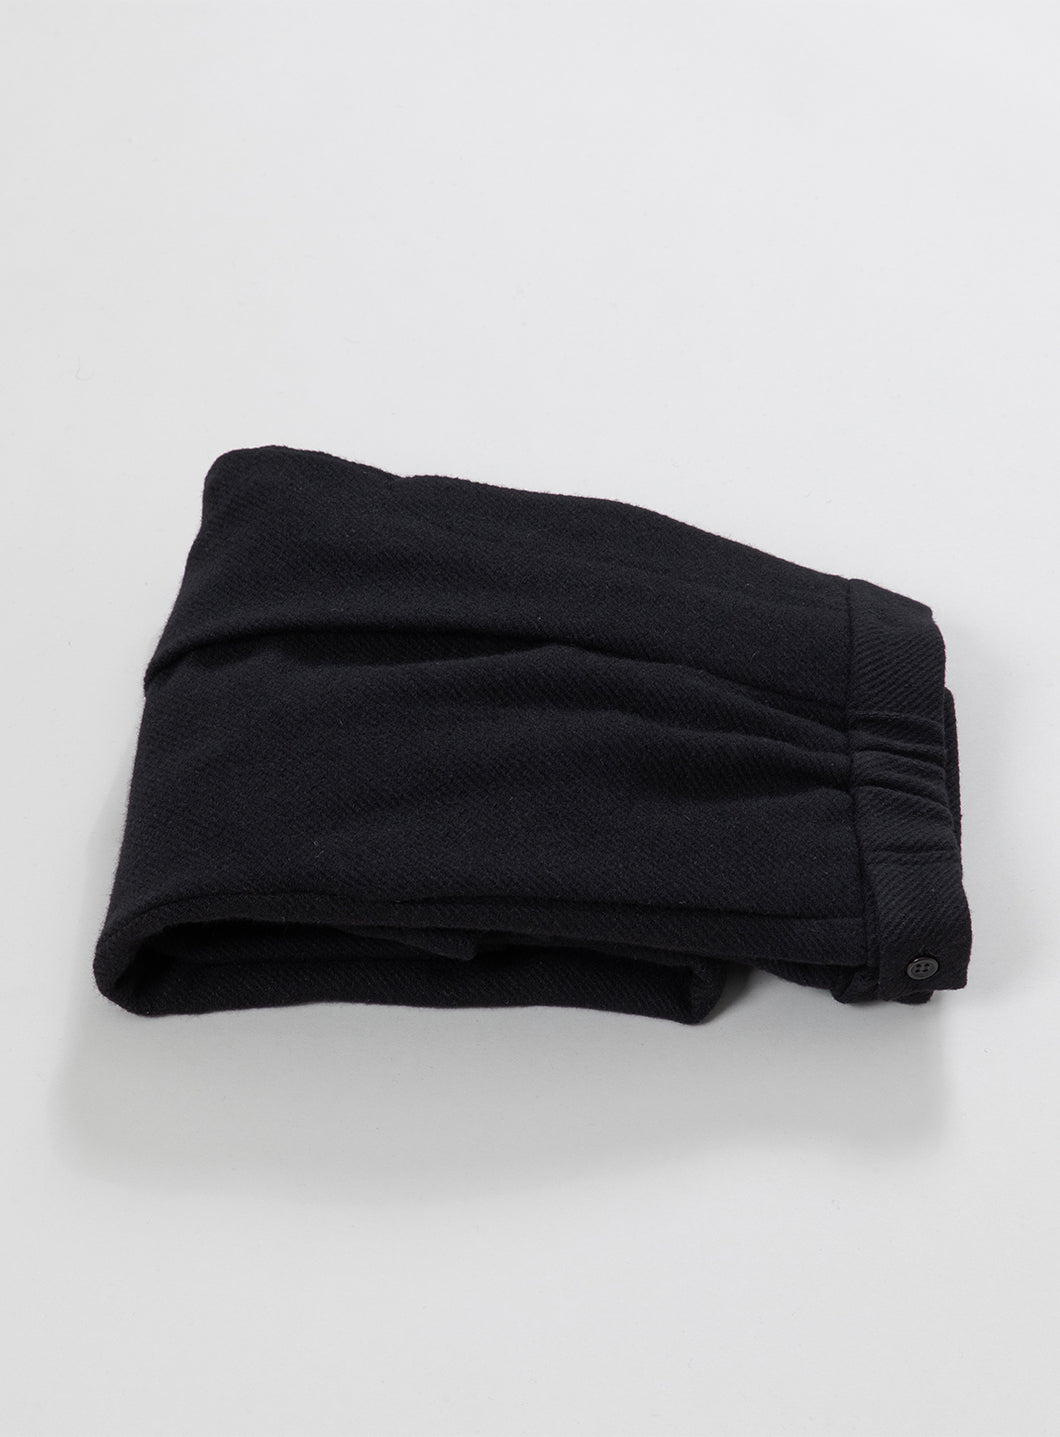 Pleated Pants in Black Wool